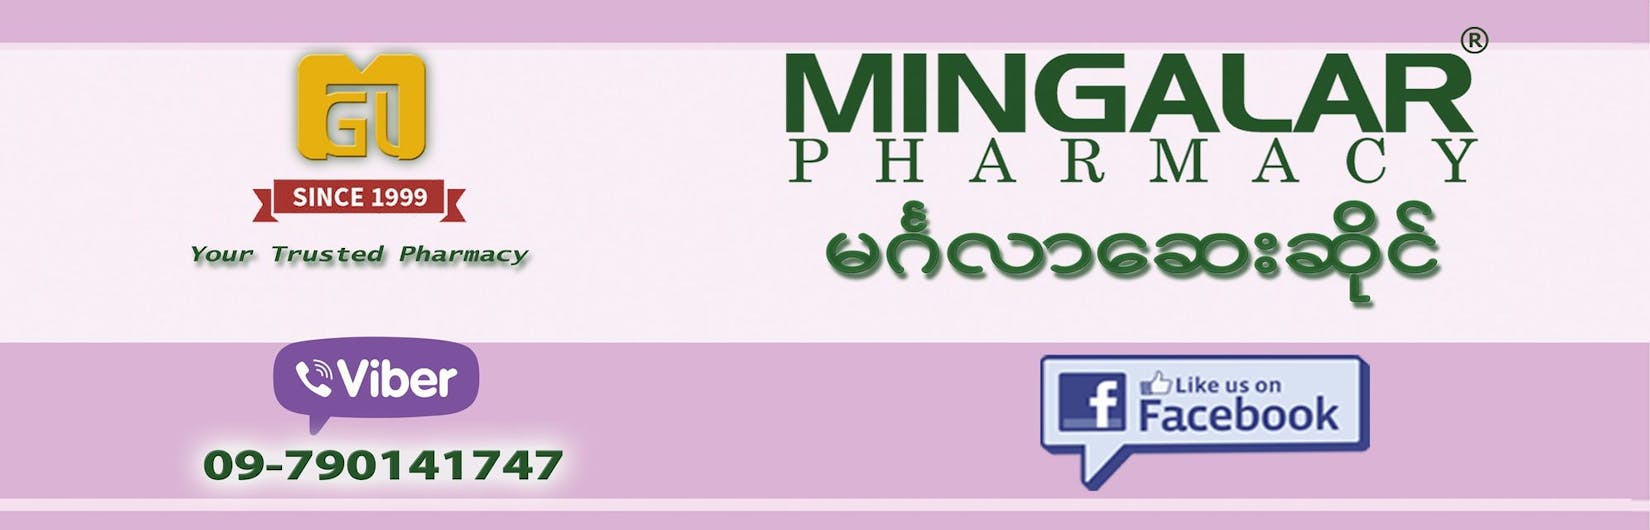 Mingalar Pharmacy | Beauty